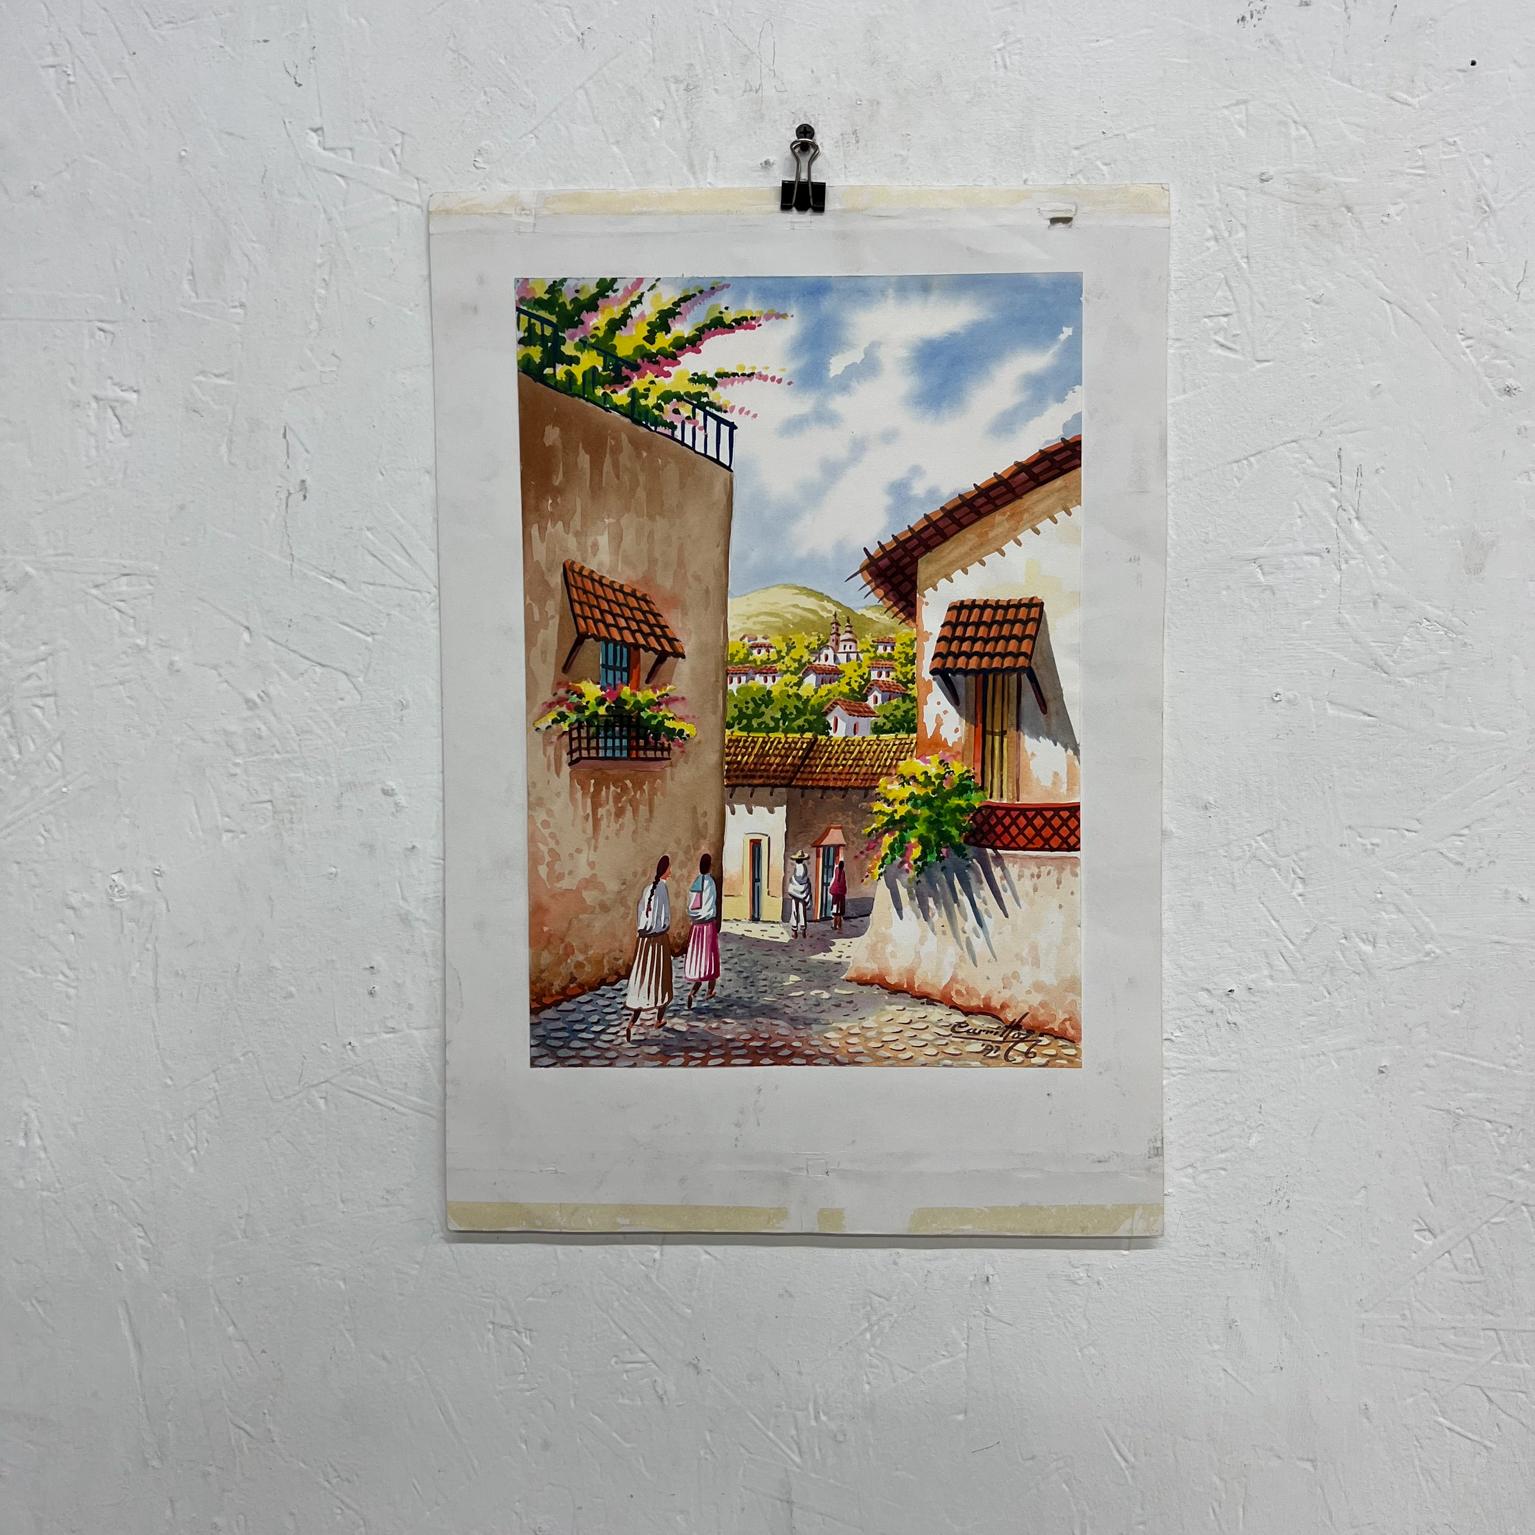 1997 Vintage Original Art Watercolor Cobblestone Village #2 by Carrillo
Signé Carrillo 97
12.75 x 18.25
État vintage non restauré.
Voir les images fournies.


